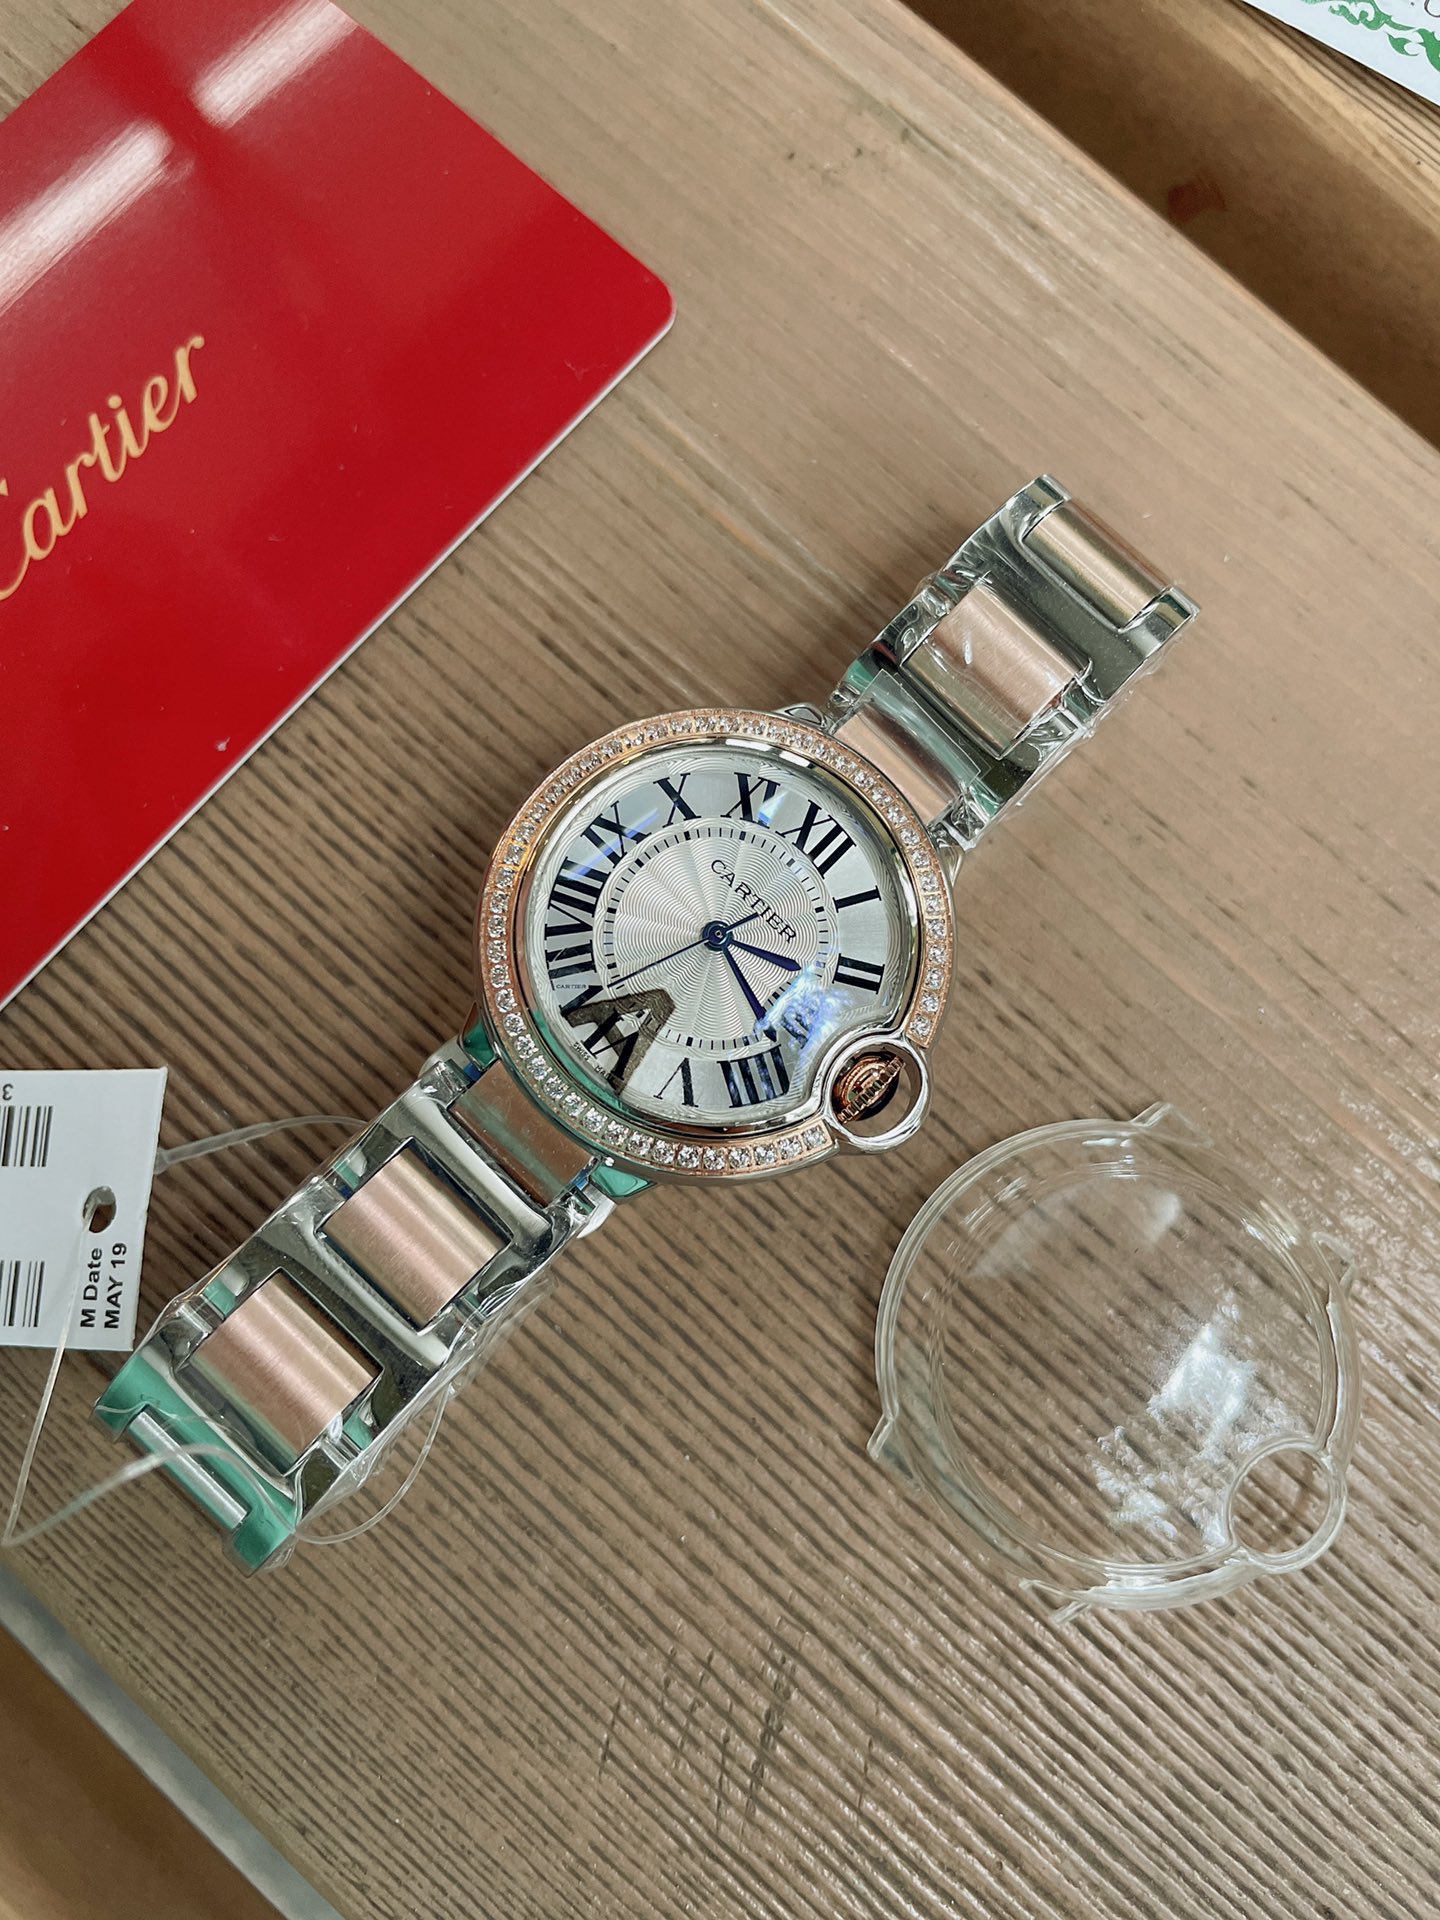 「ダイヤモンドある」CARTIERカルティエ 時計 中身コピー フランス 薄い腕時計 軽量 レディース 最新商品 キラキラ _6